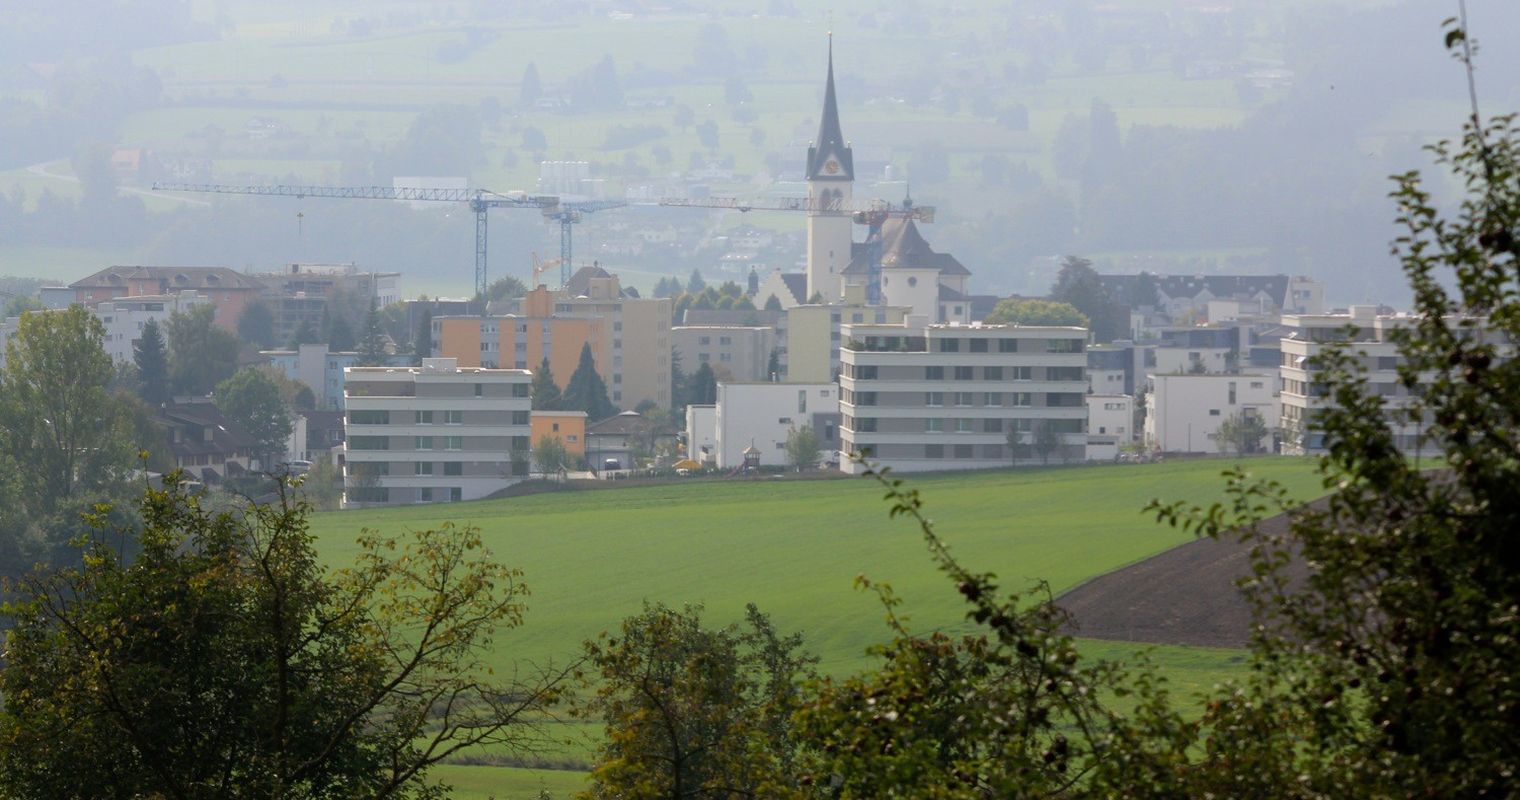 Südiareal Hochdorf: Aus Milchfabrik soll Dorfplatz werden